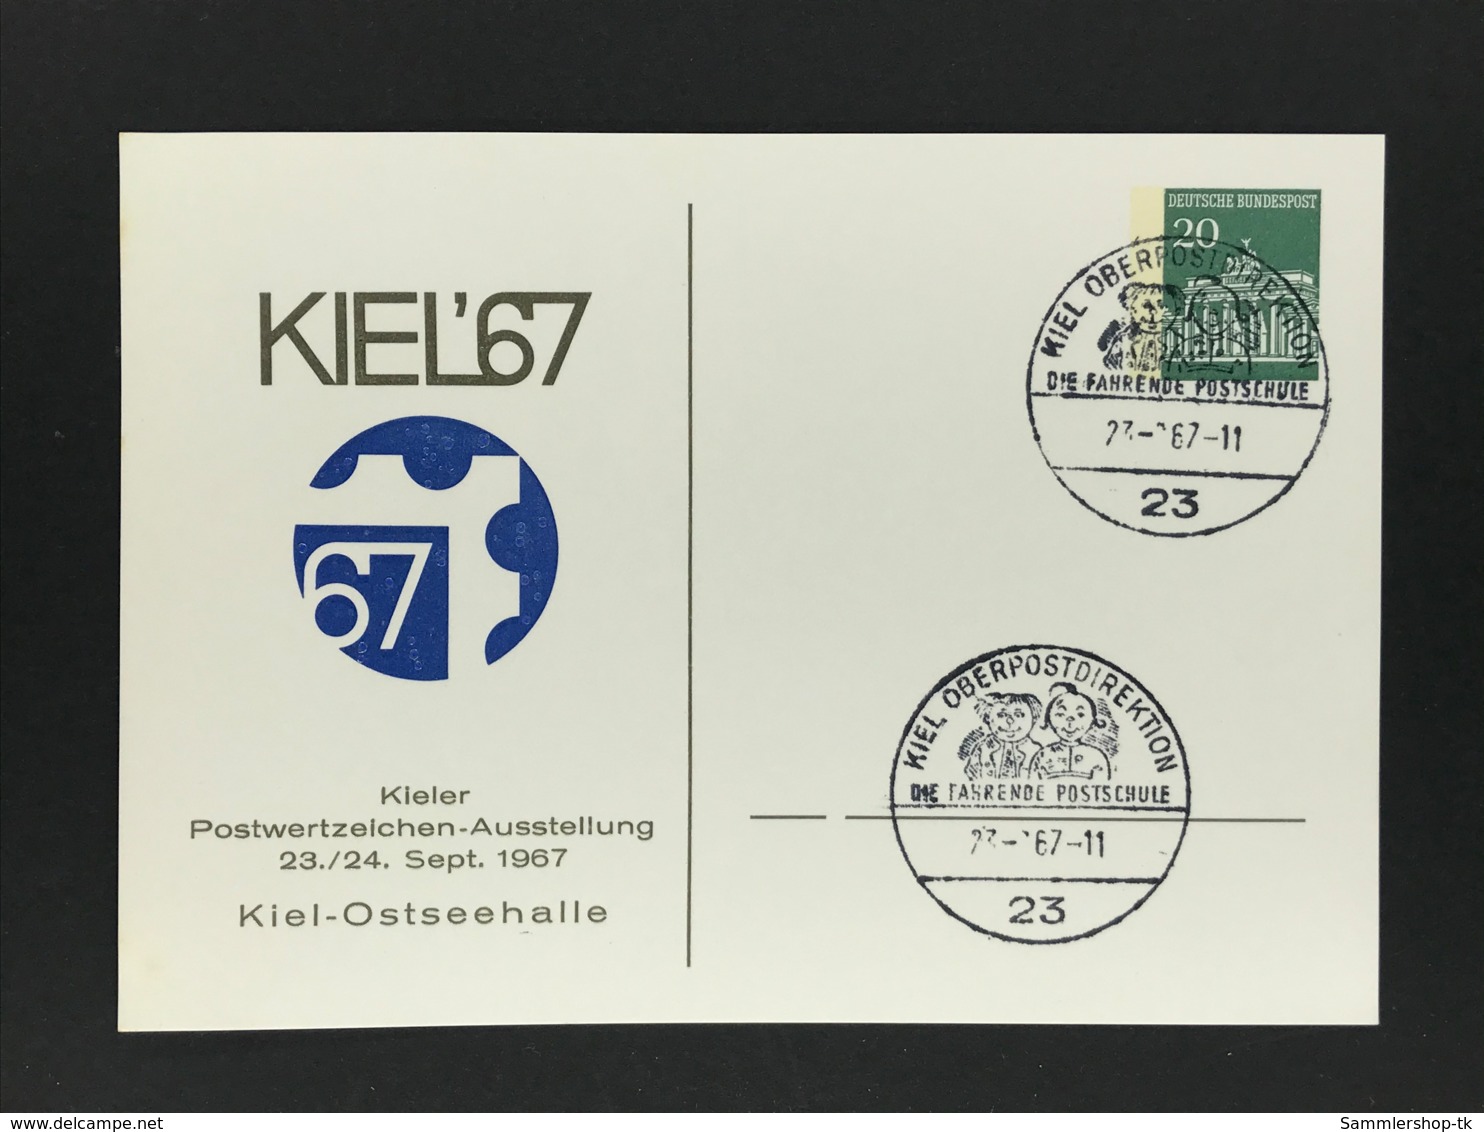 Privatganzsache Postwertzeichen-Ausstellung Kiel 1967 - Private Postcards - Used